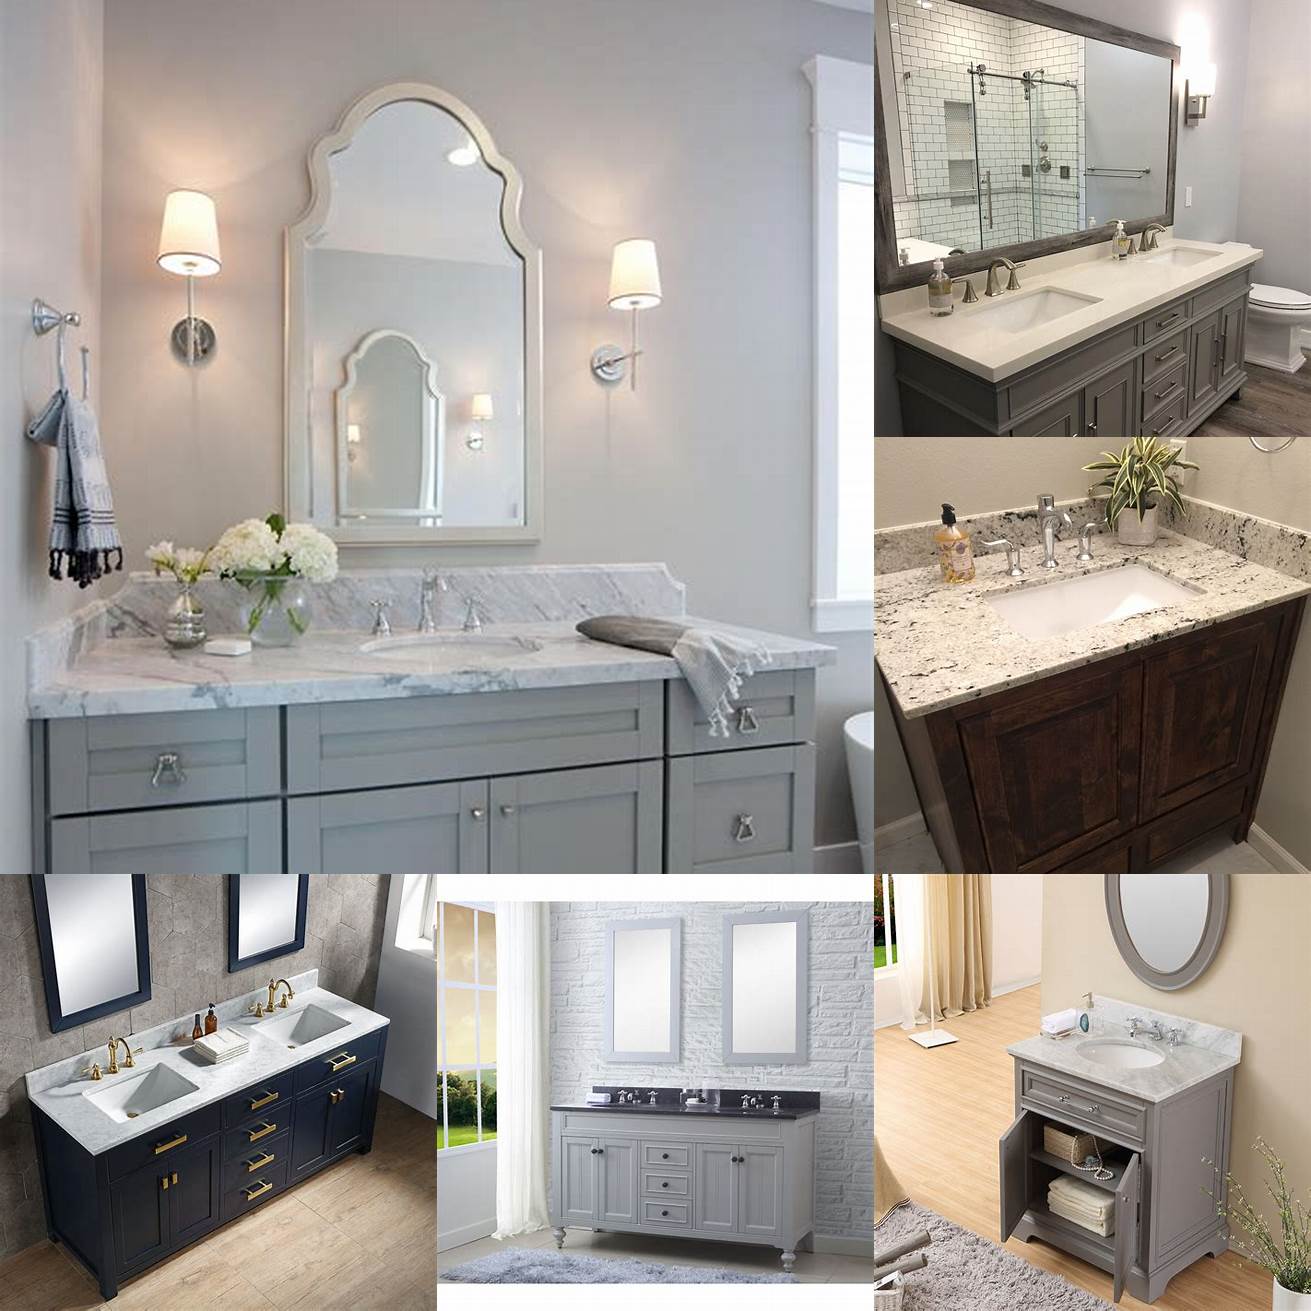 2 Gray granite bathroom vanity